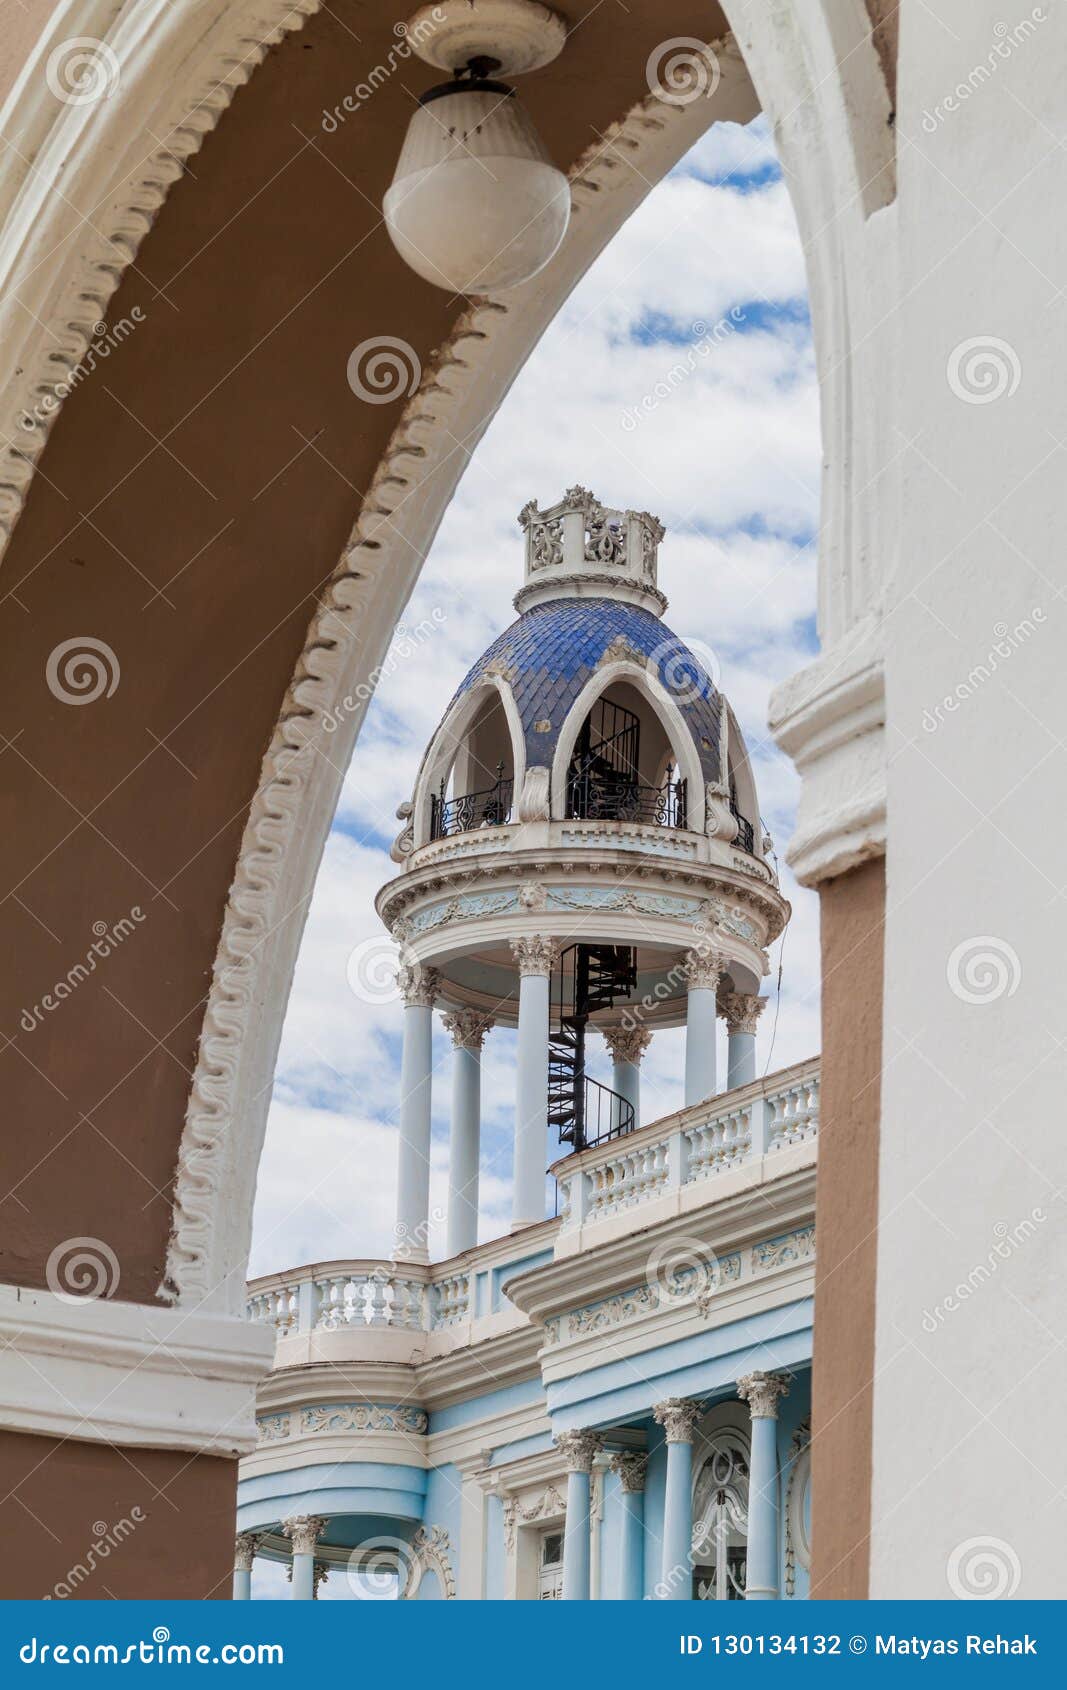 tower of casa de la cultura benjamin duarte in cienfuegos, cub